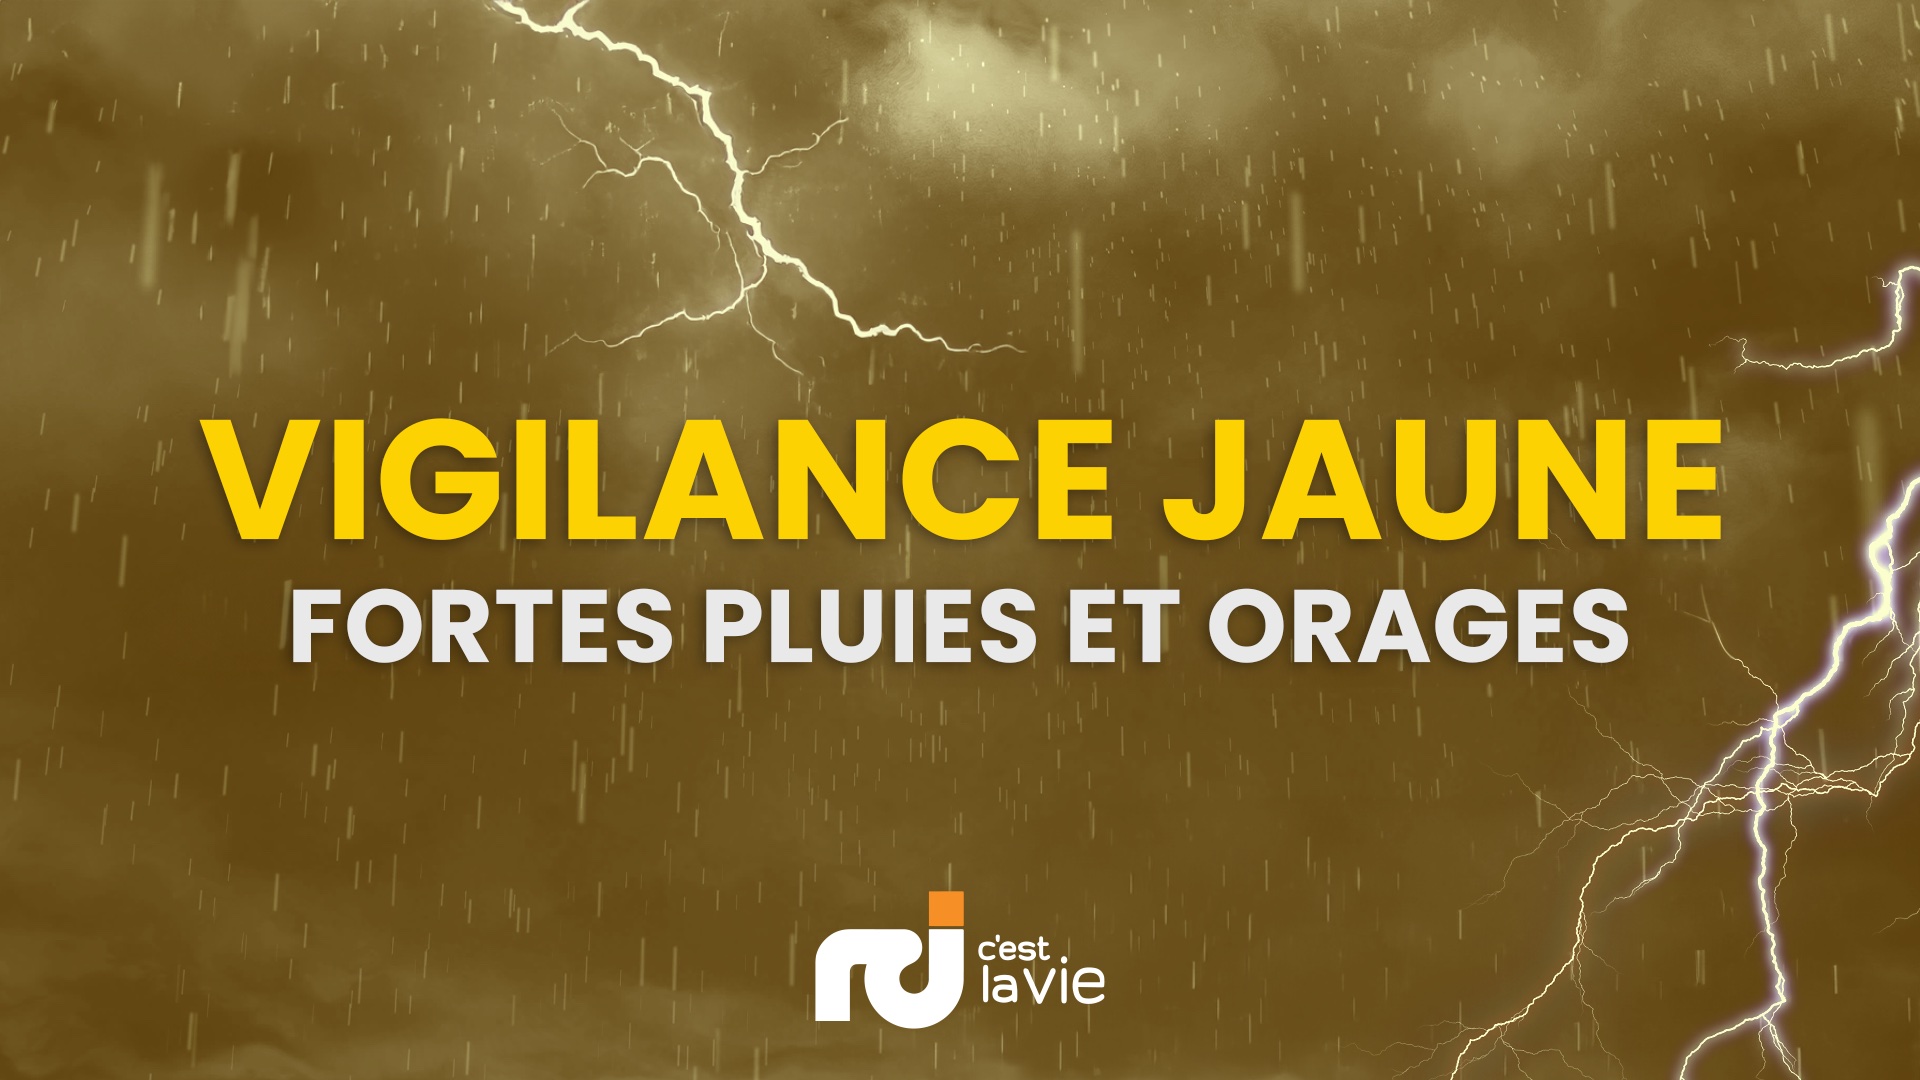     Une première onde tropicale attendue en Guadeloupe, placée en vigilance Jaune pour « fortes pluies et orages »

